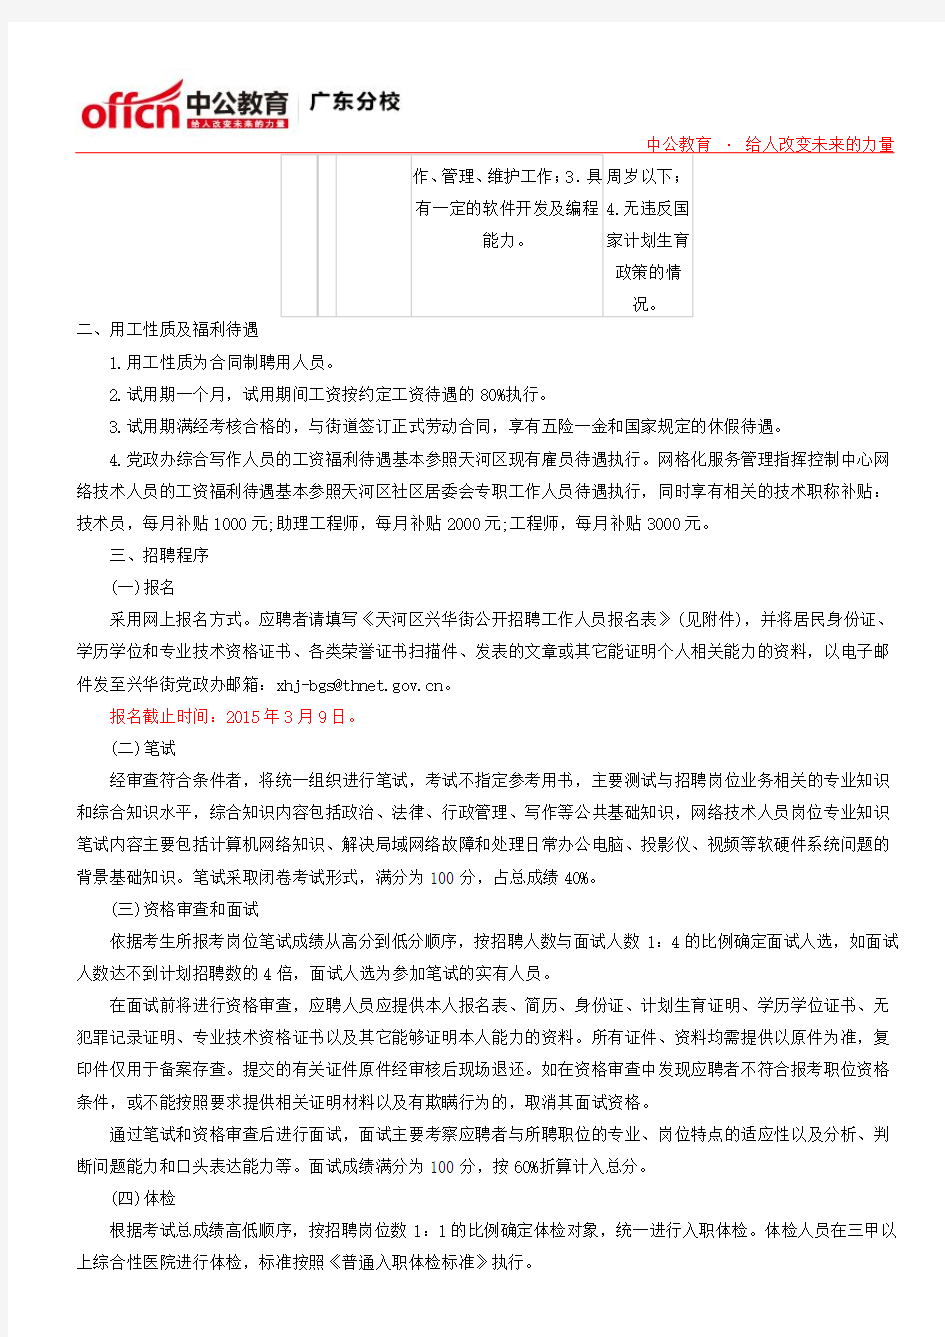 广州市天河区兴华街关于2015年公开招聘2名综合写作和网络技术工作人员的公告